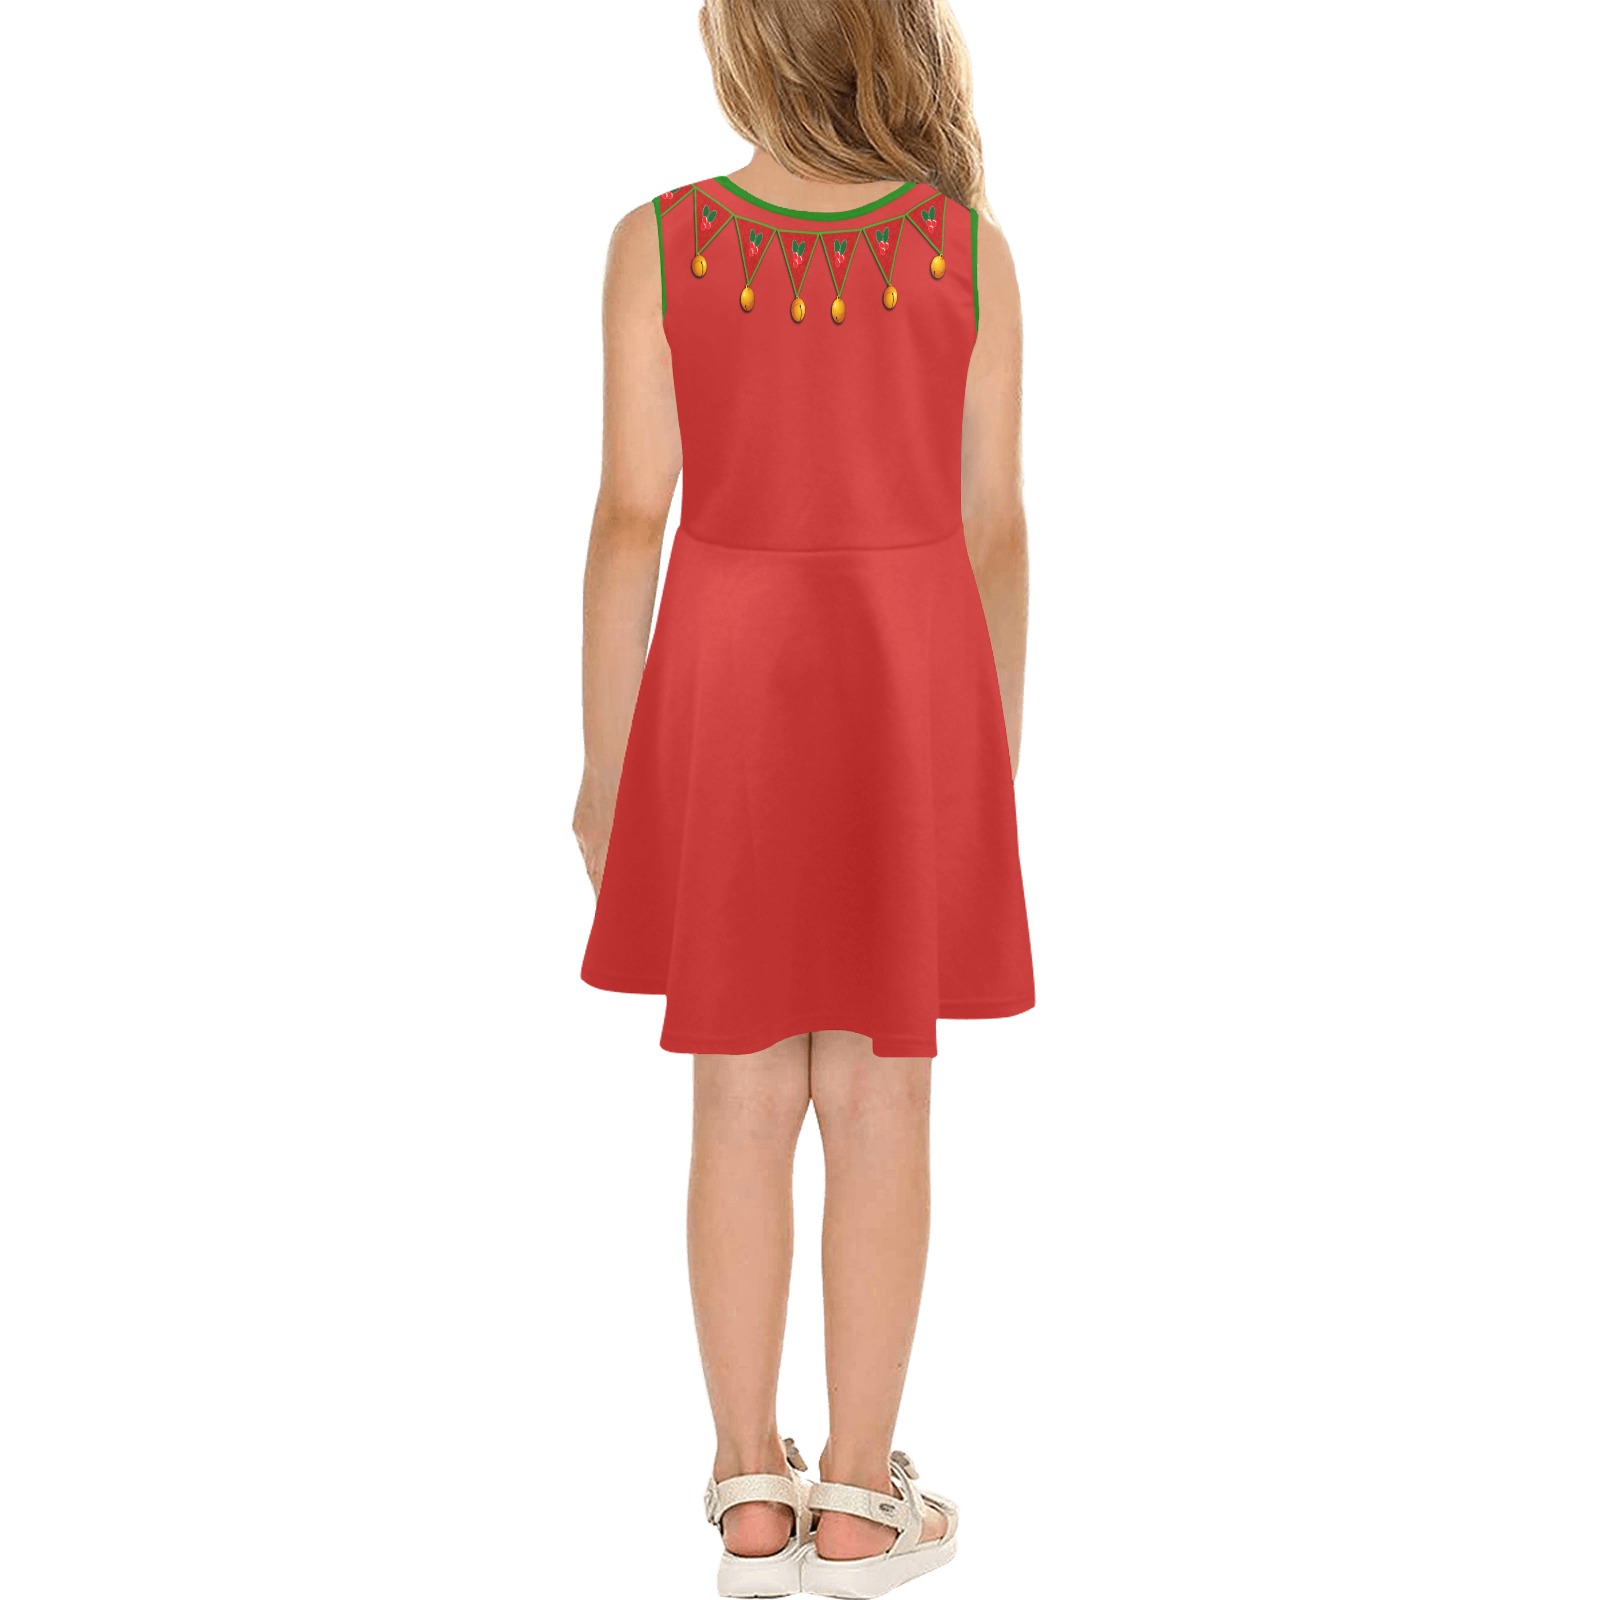 Red Elf Costume Girls' Sleeveless Sundress (Model D56)